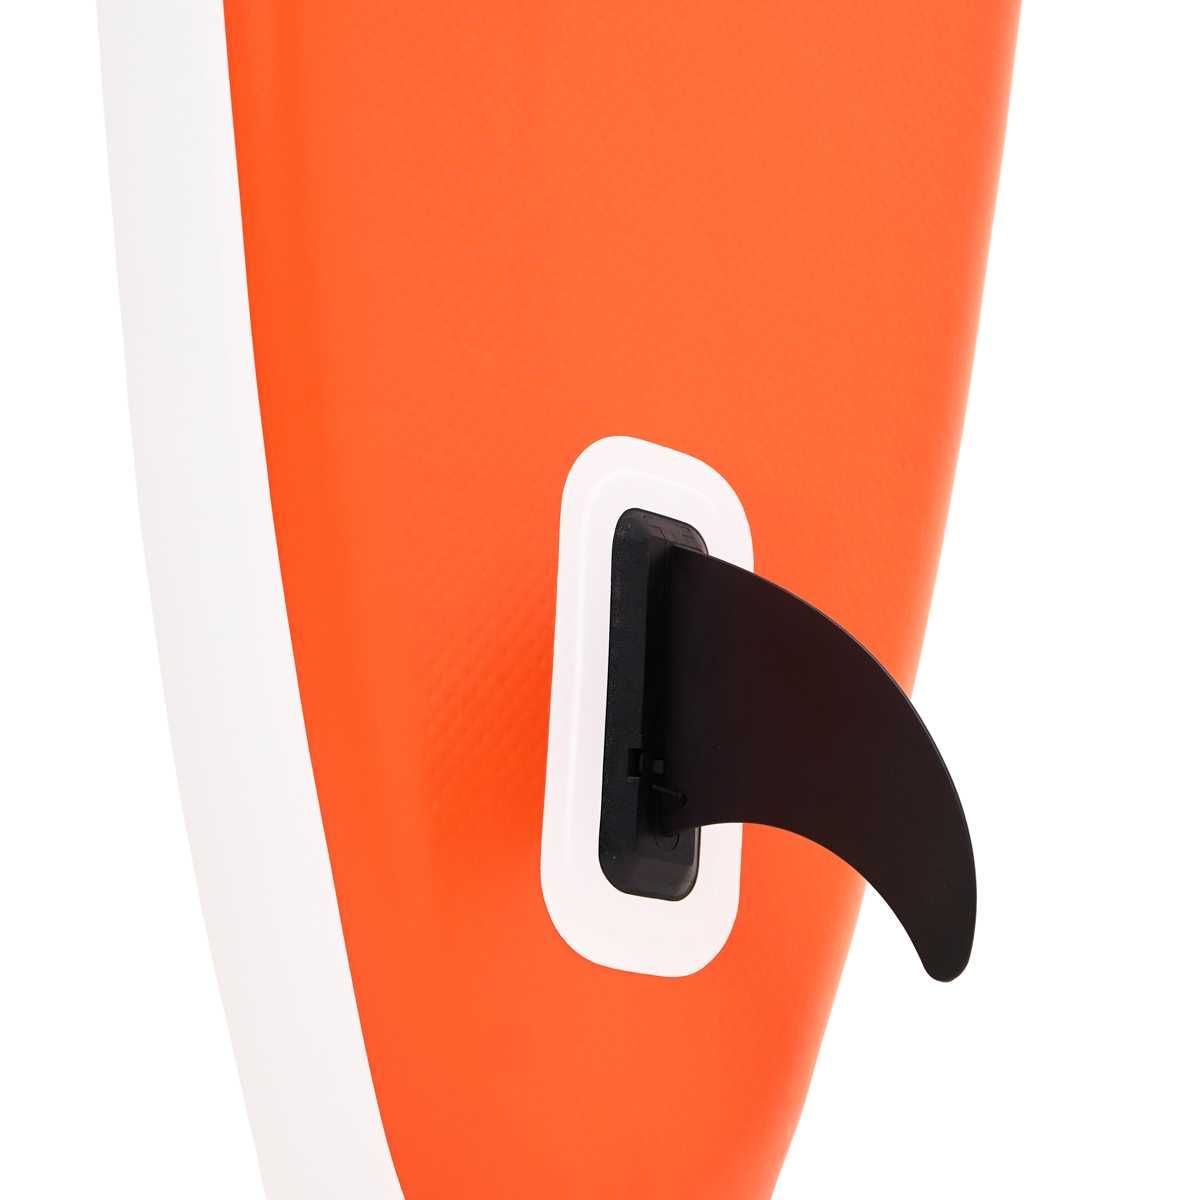 Продам Sup GQ board paddle борд 335*81*15 дошка сапборд сап surf